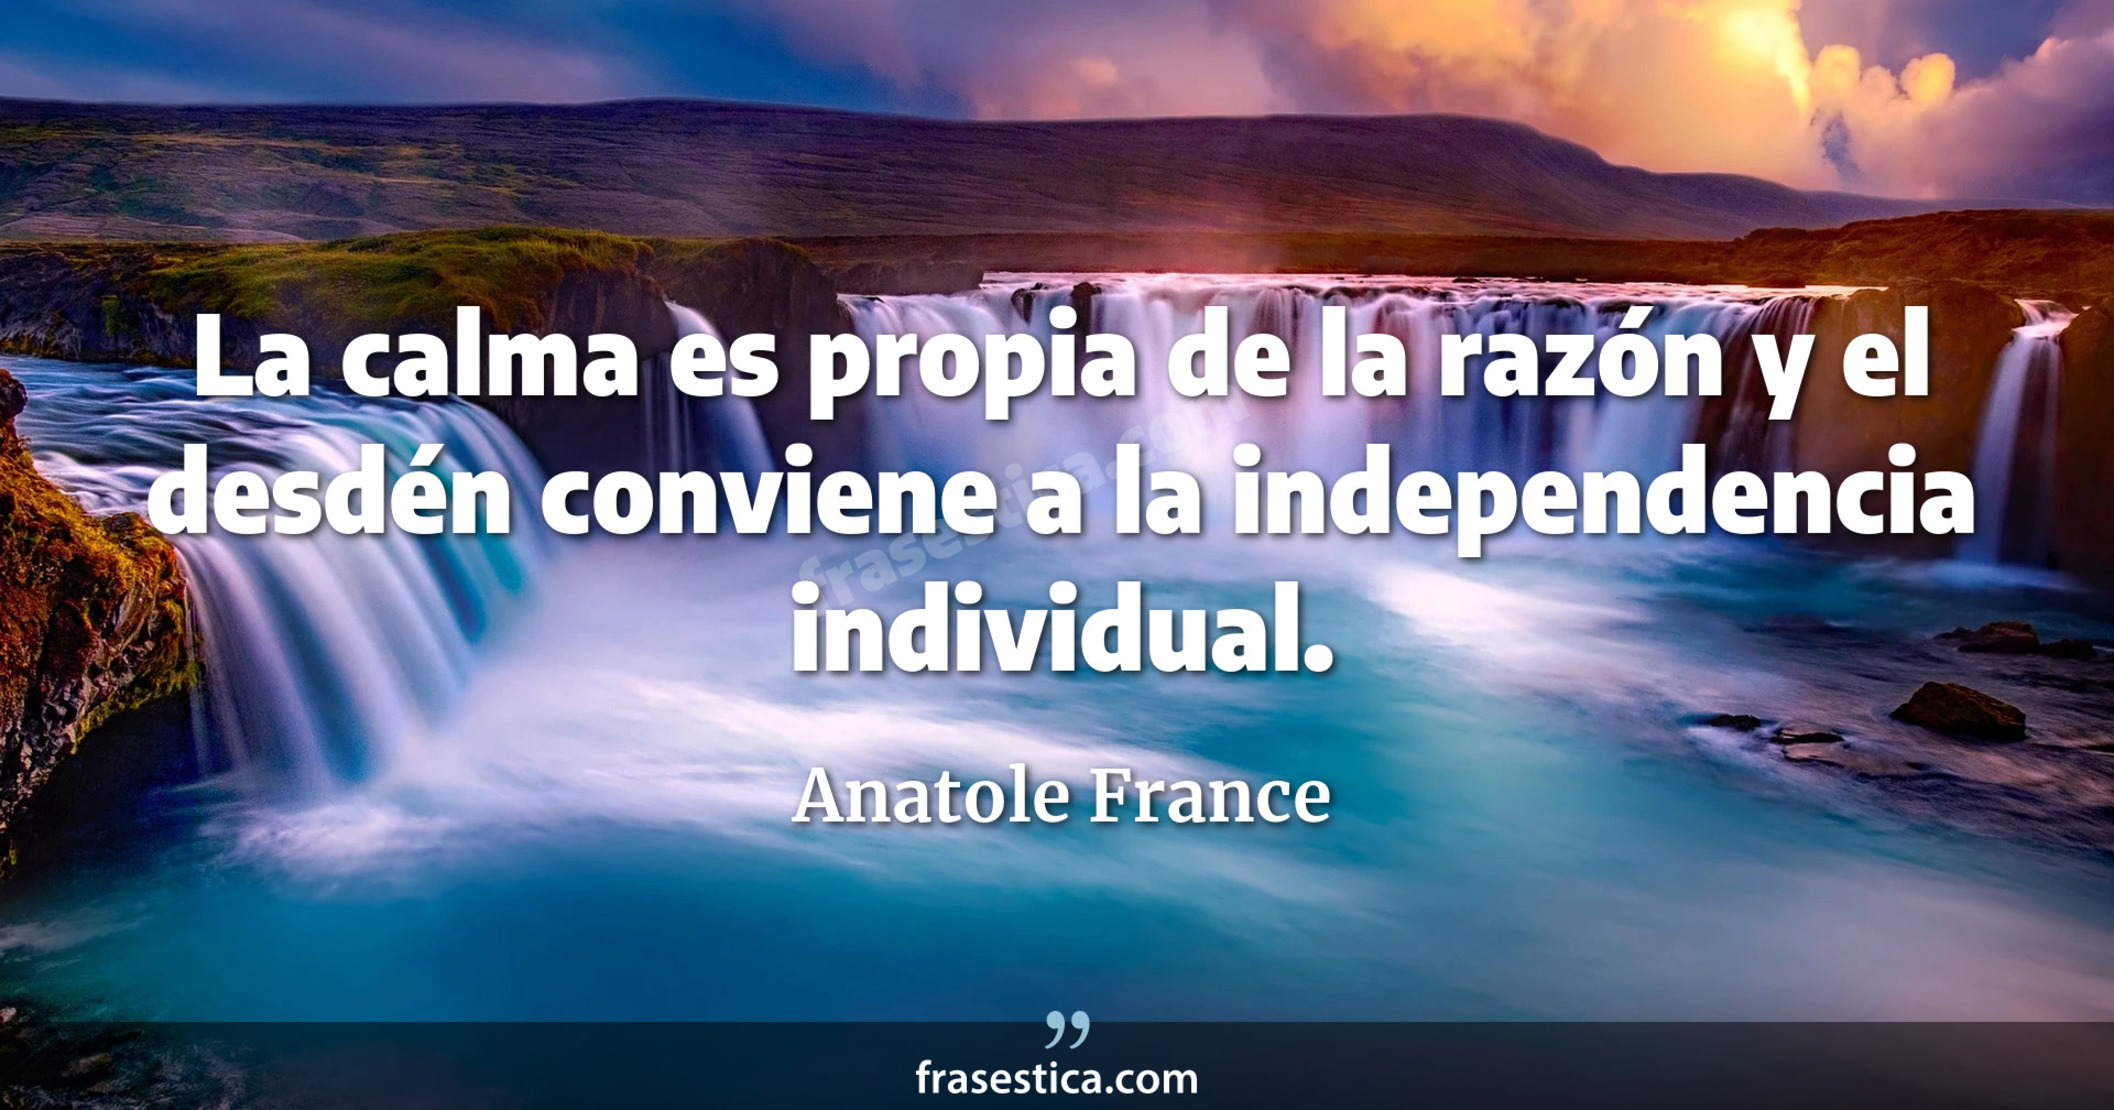 La calma es propia de la razón y el desdén conviene a la independencia individual. - Anatole France